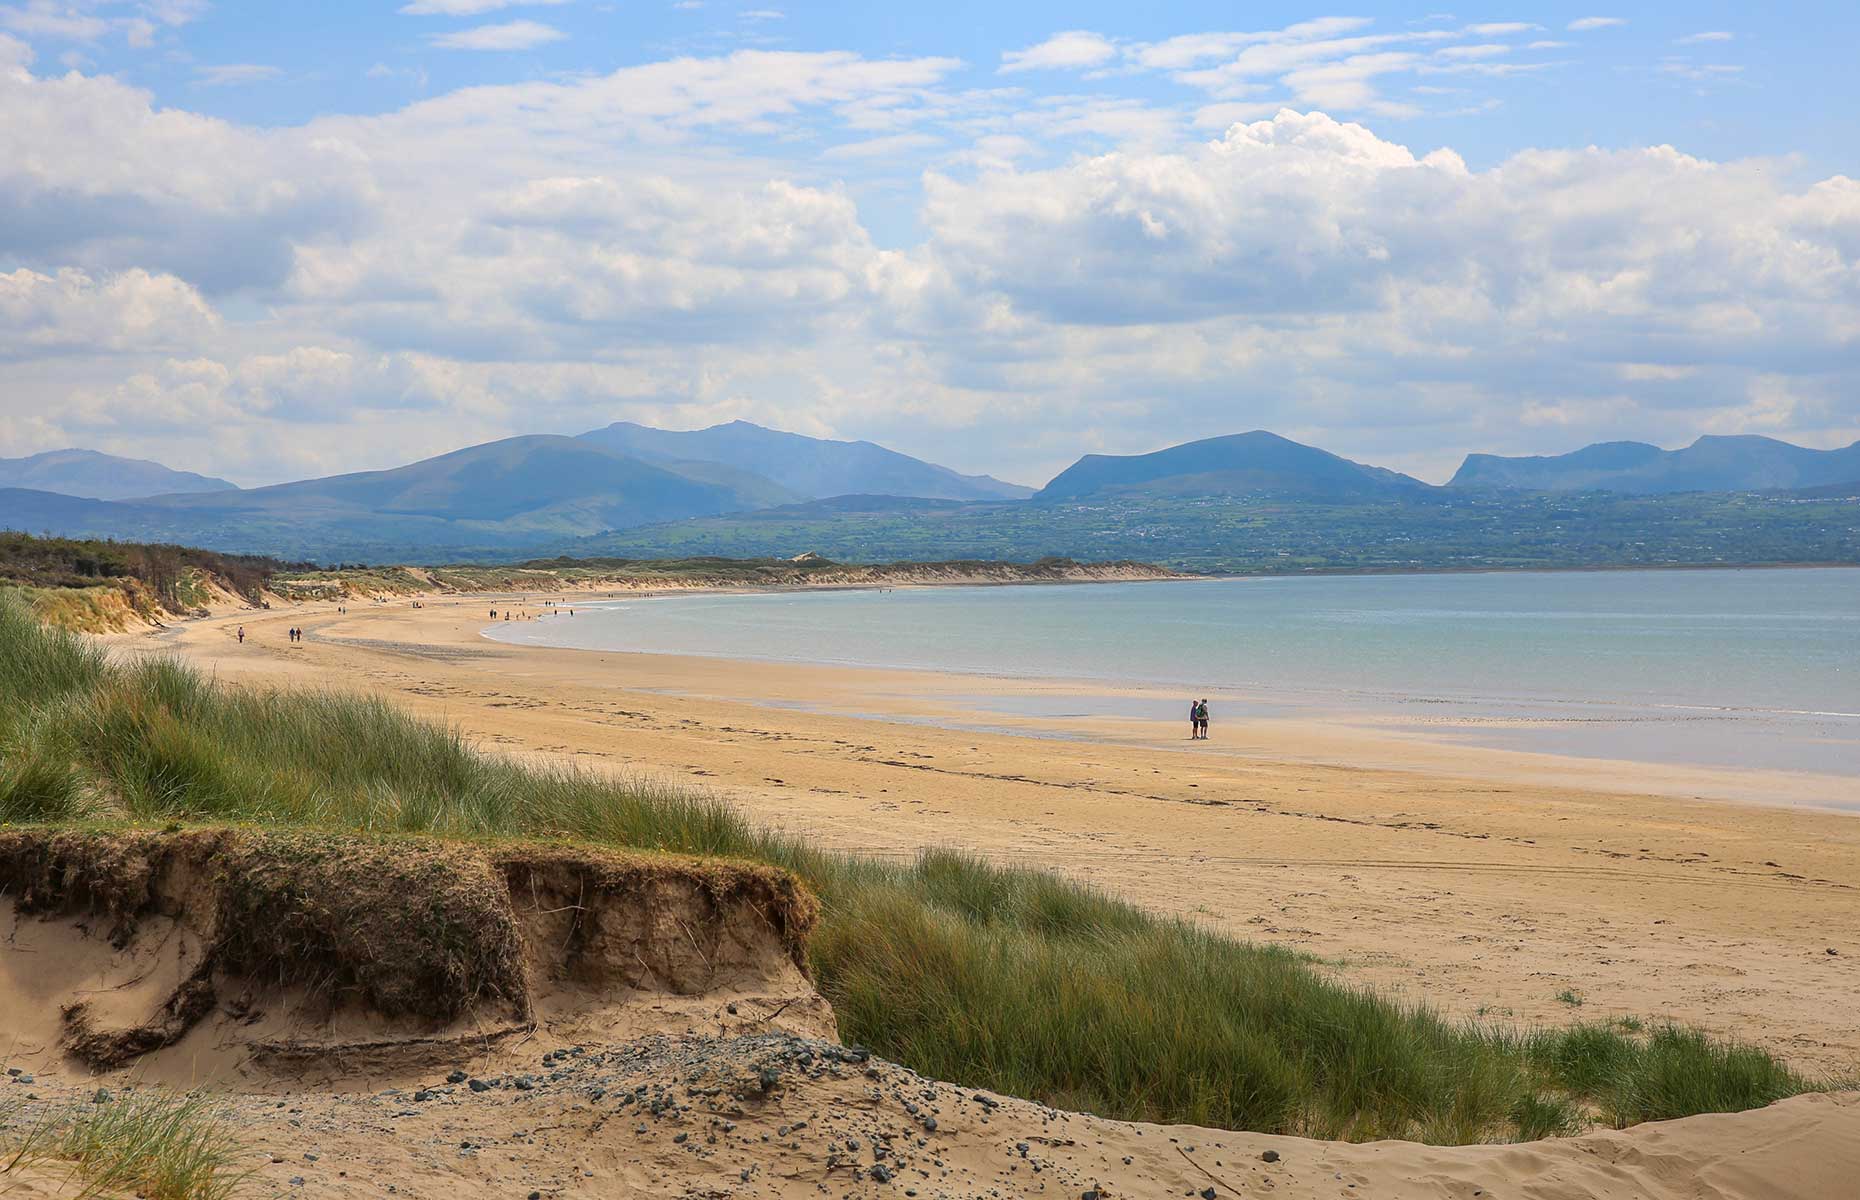 Newborough Beach Bay in Anglesey Wales (Image: Martina Hardiman/Shutterstock)